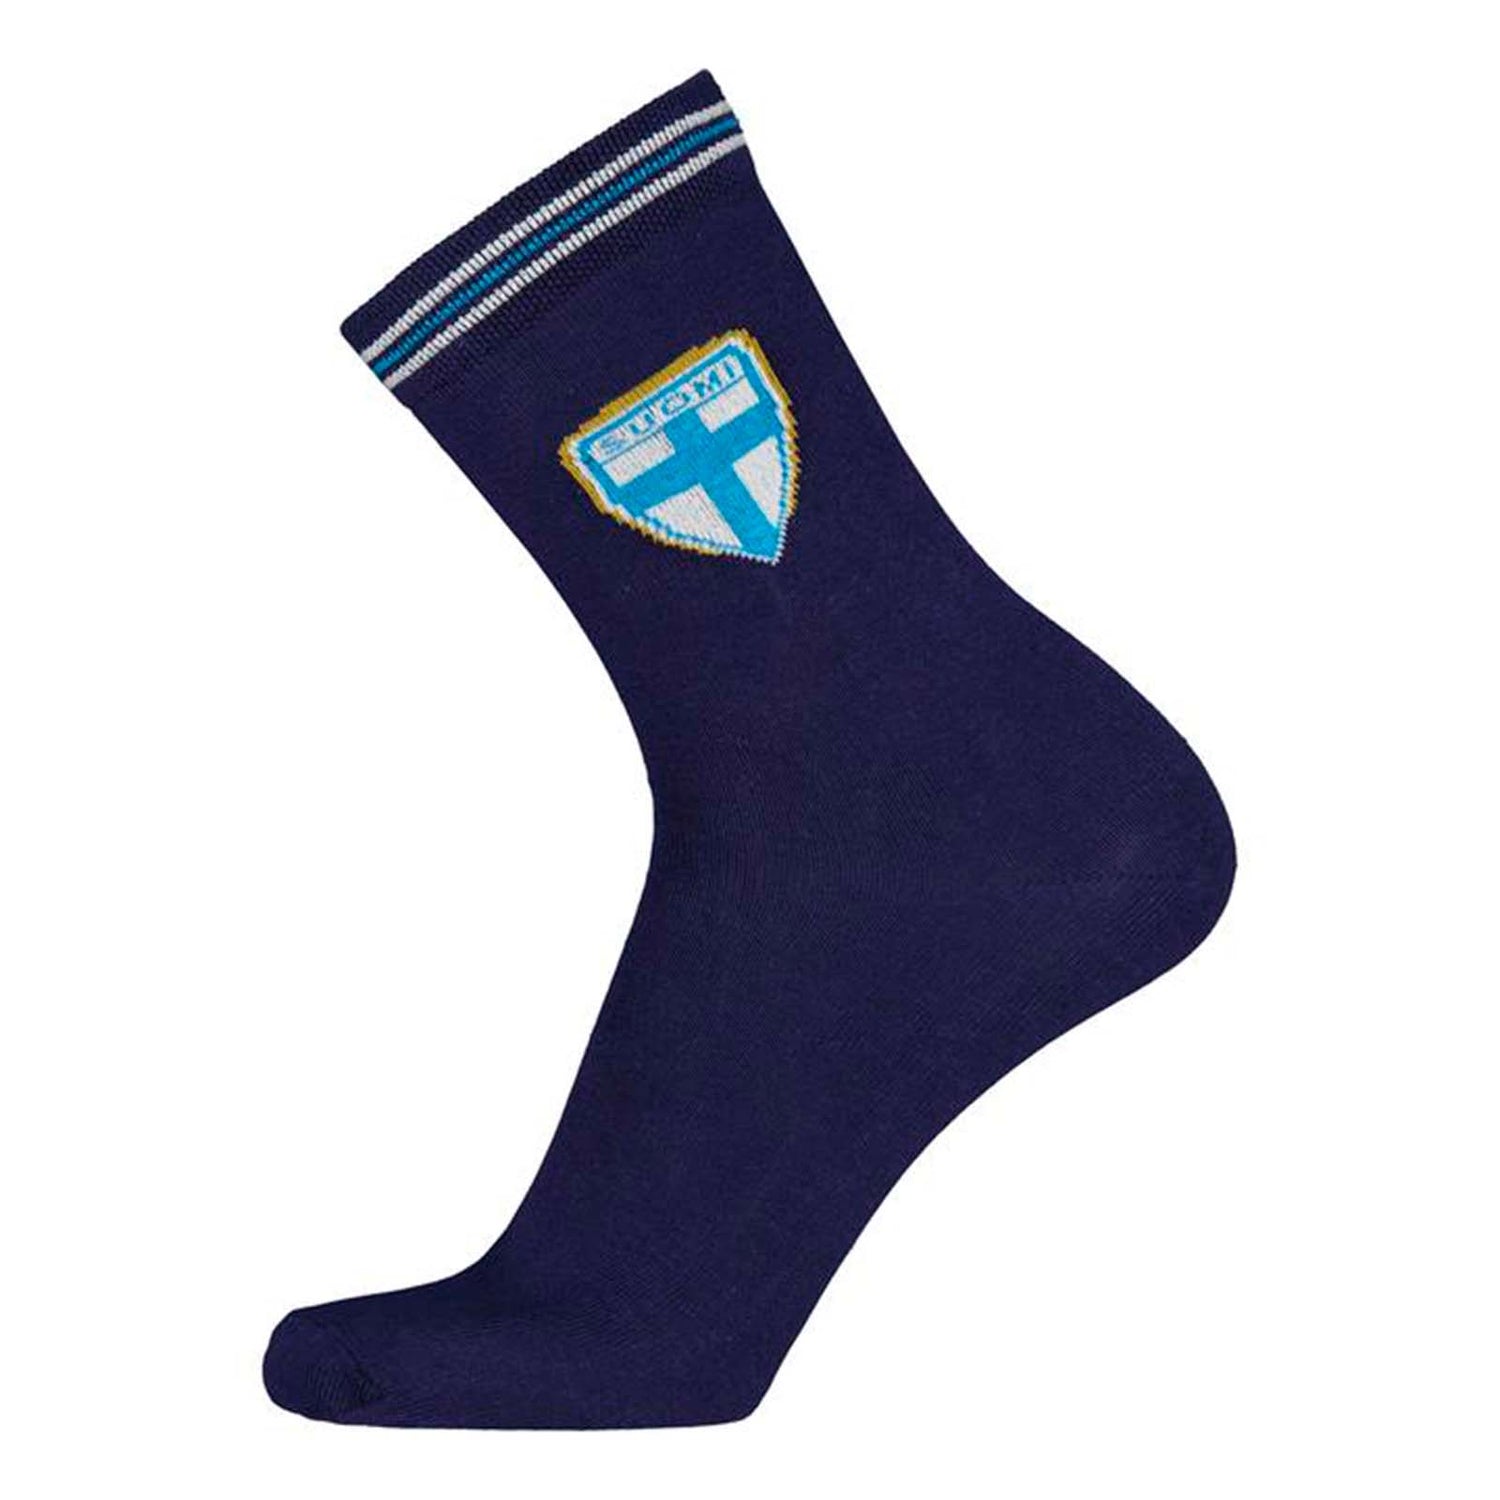 Vapaa-ajan siniset sukat suomen maajoukkueen logolla.